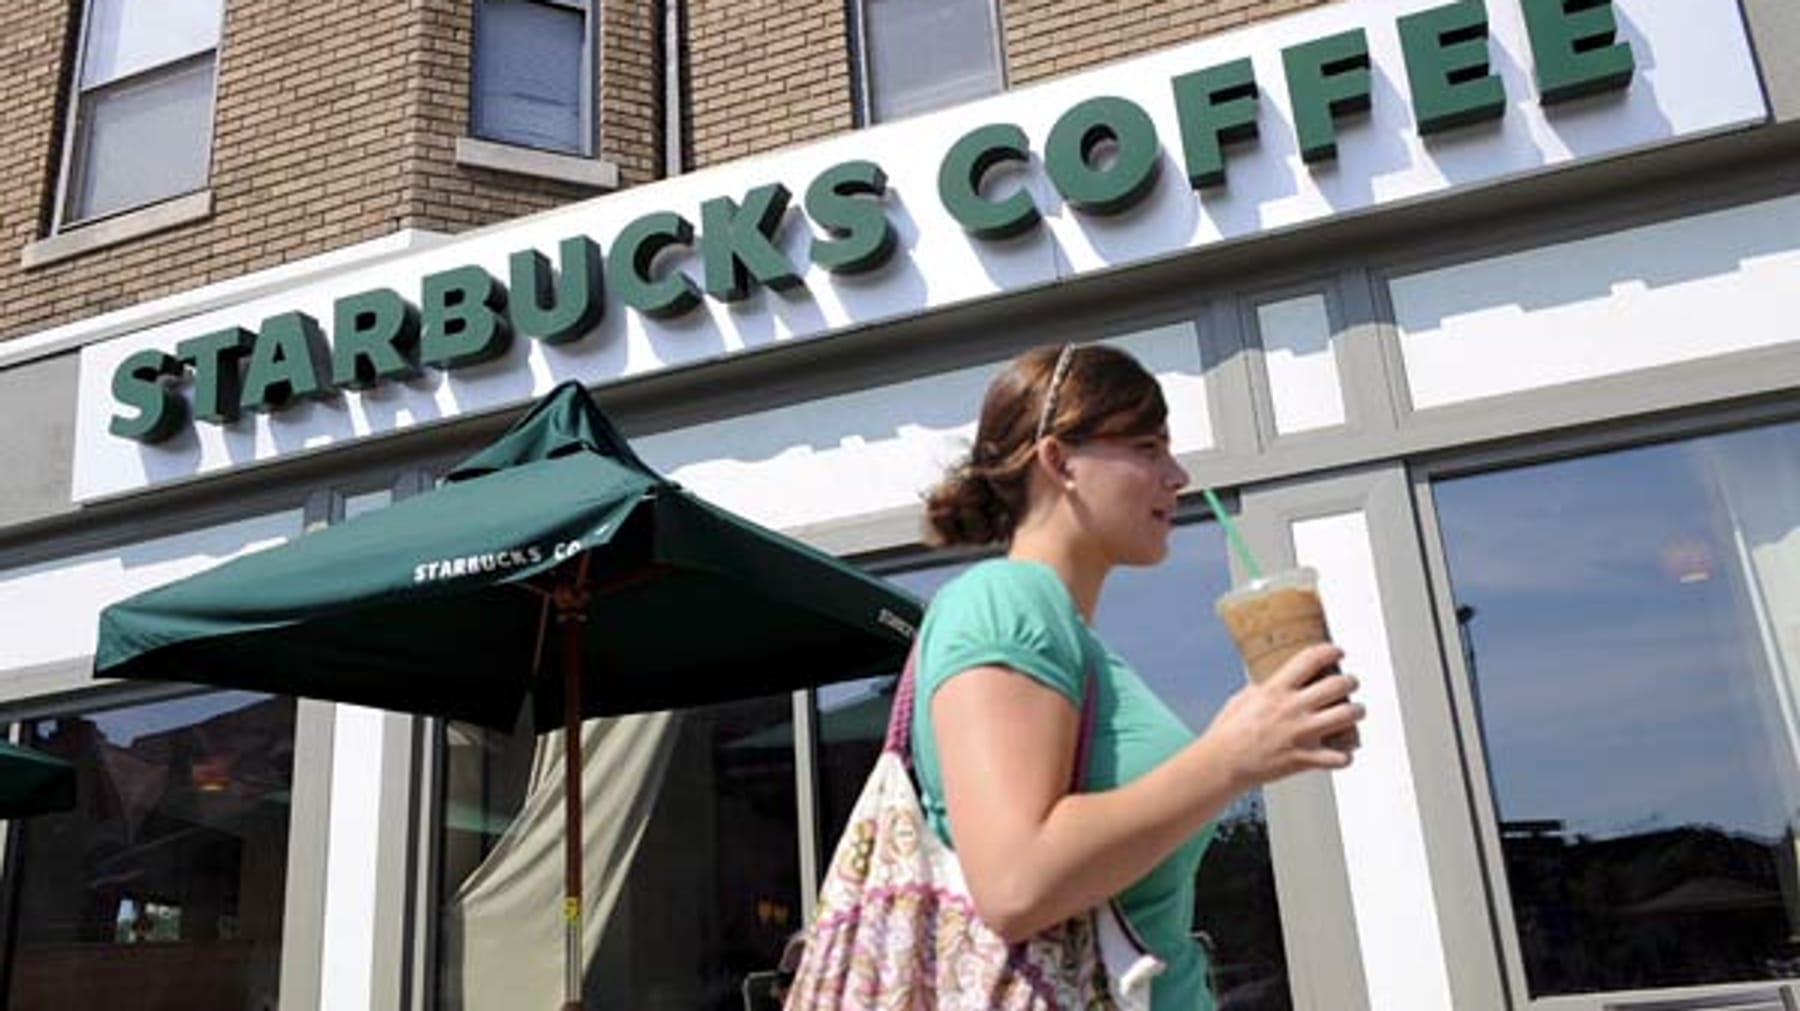 El nuevo “Olito” de Starbucks parece tener efectos secundarios